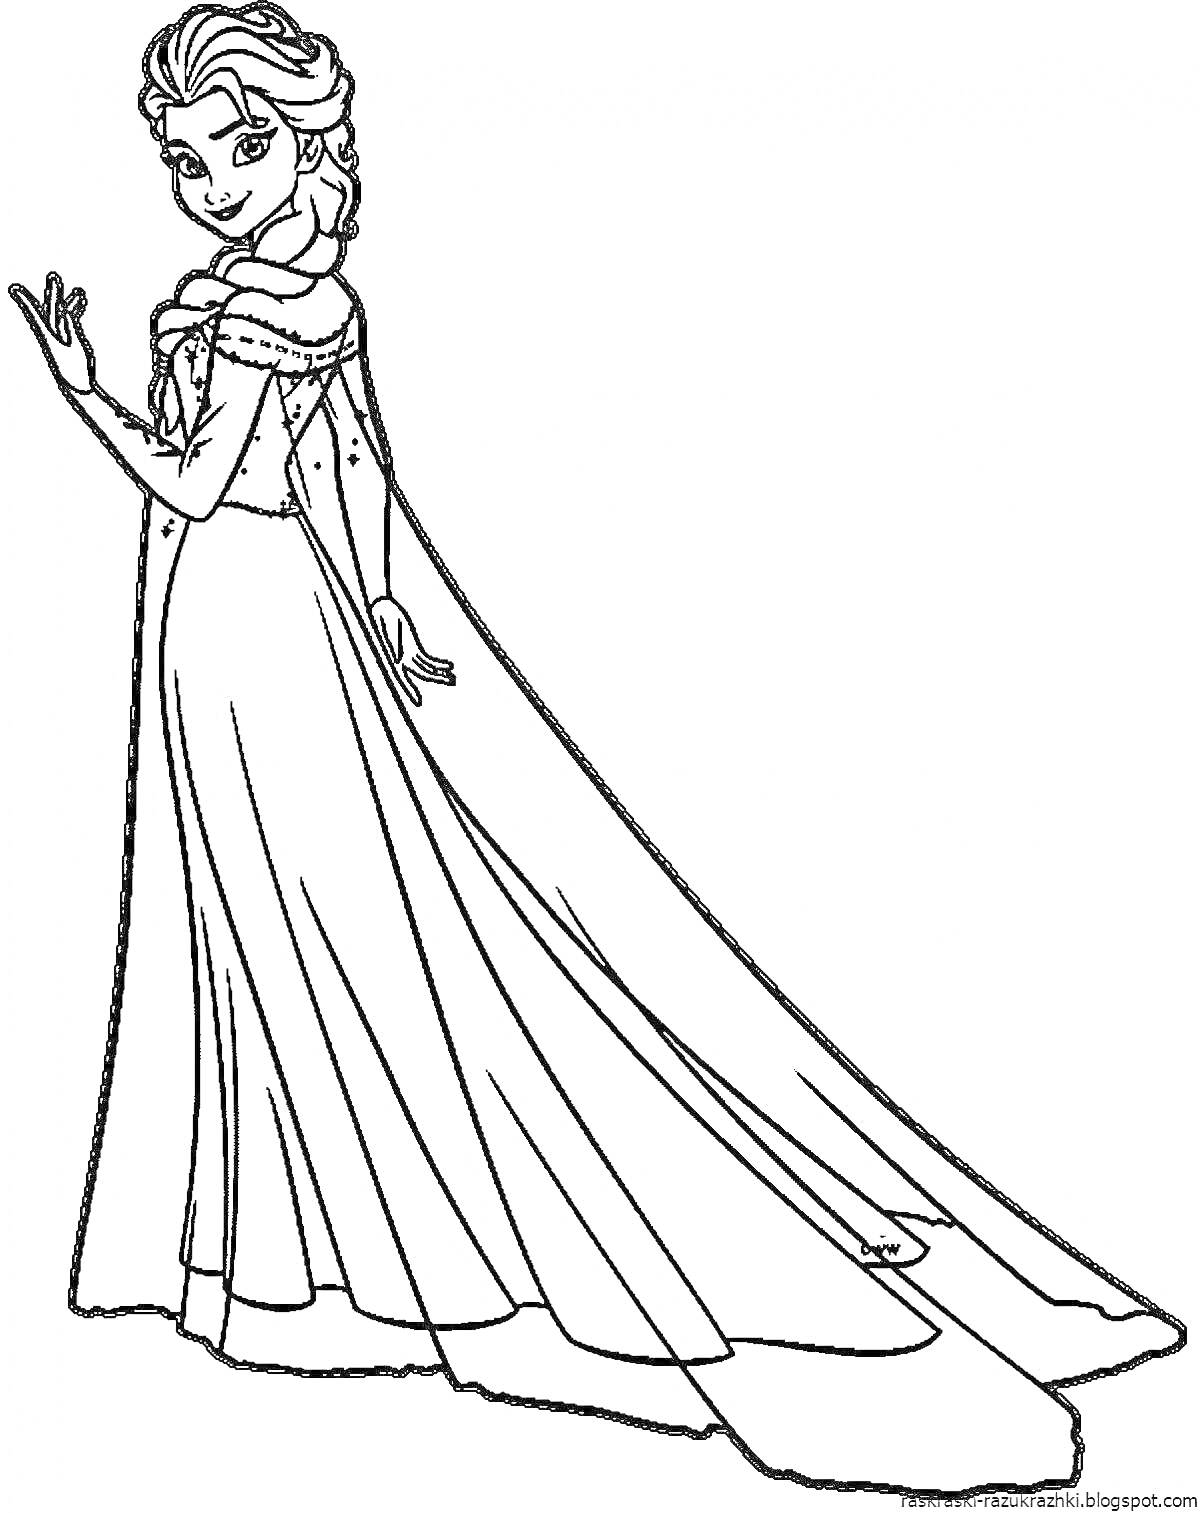 Раскраска Эльза в длинном платье, с длинной косой, повернутая в профиль, с протянутой рукой